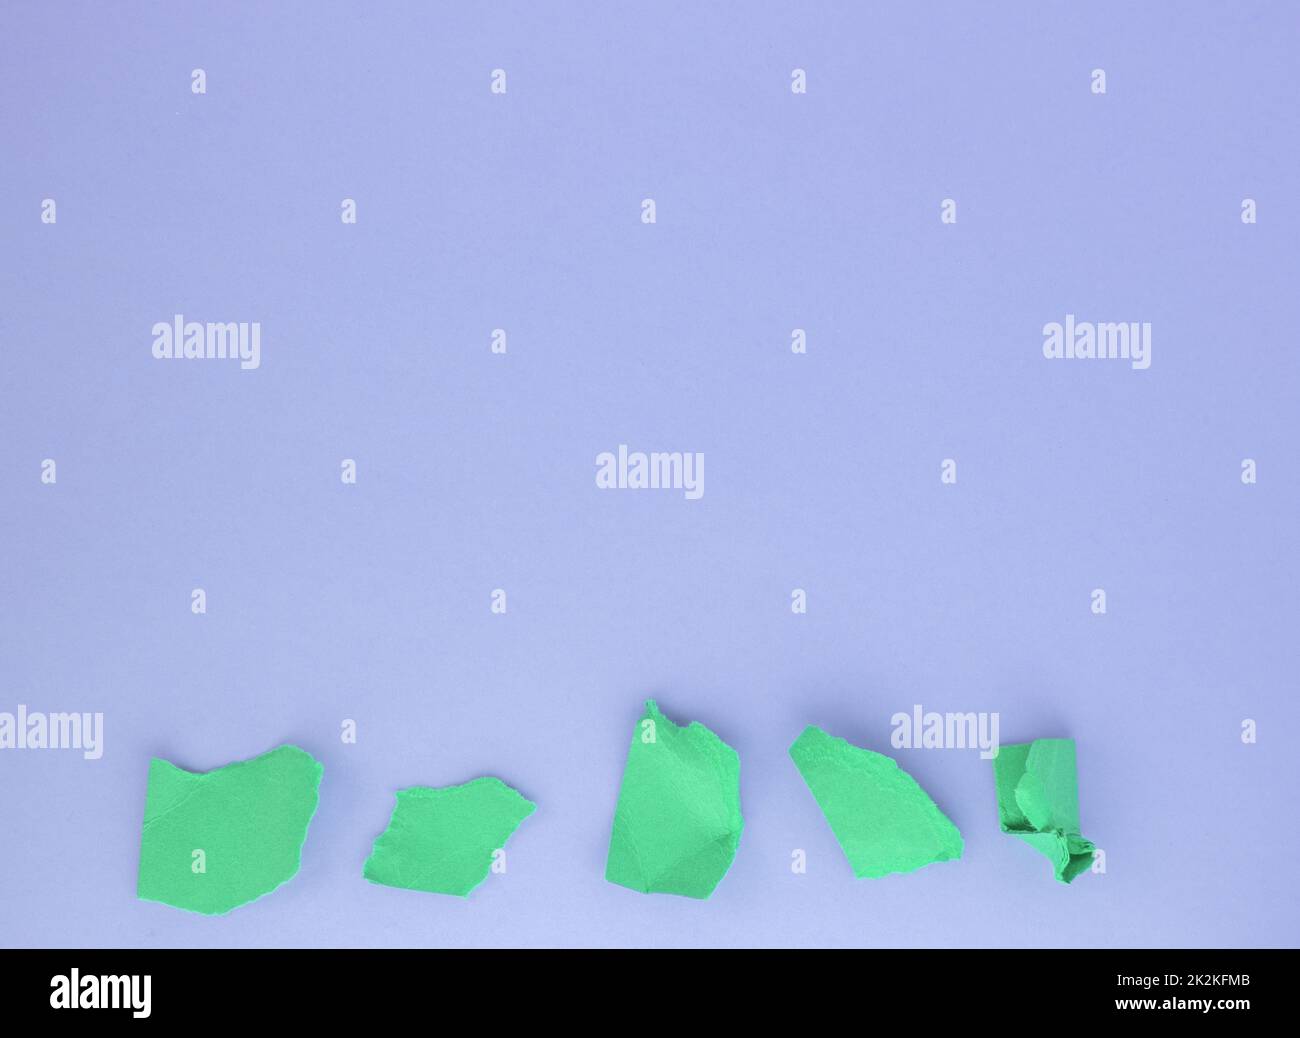 Un tas de boules de papier vert froissé sur un fond violet sur le bord inférieur. Le concept de minimalisme, une copie de l'espace Banque D'Images